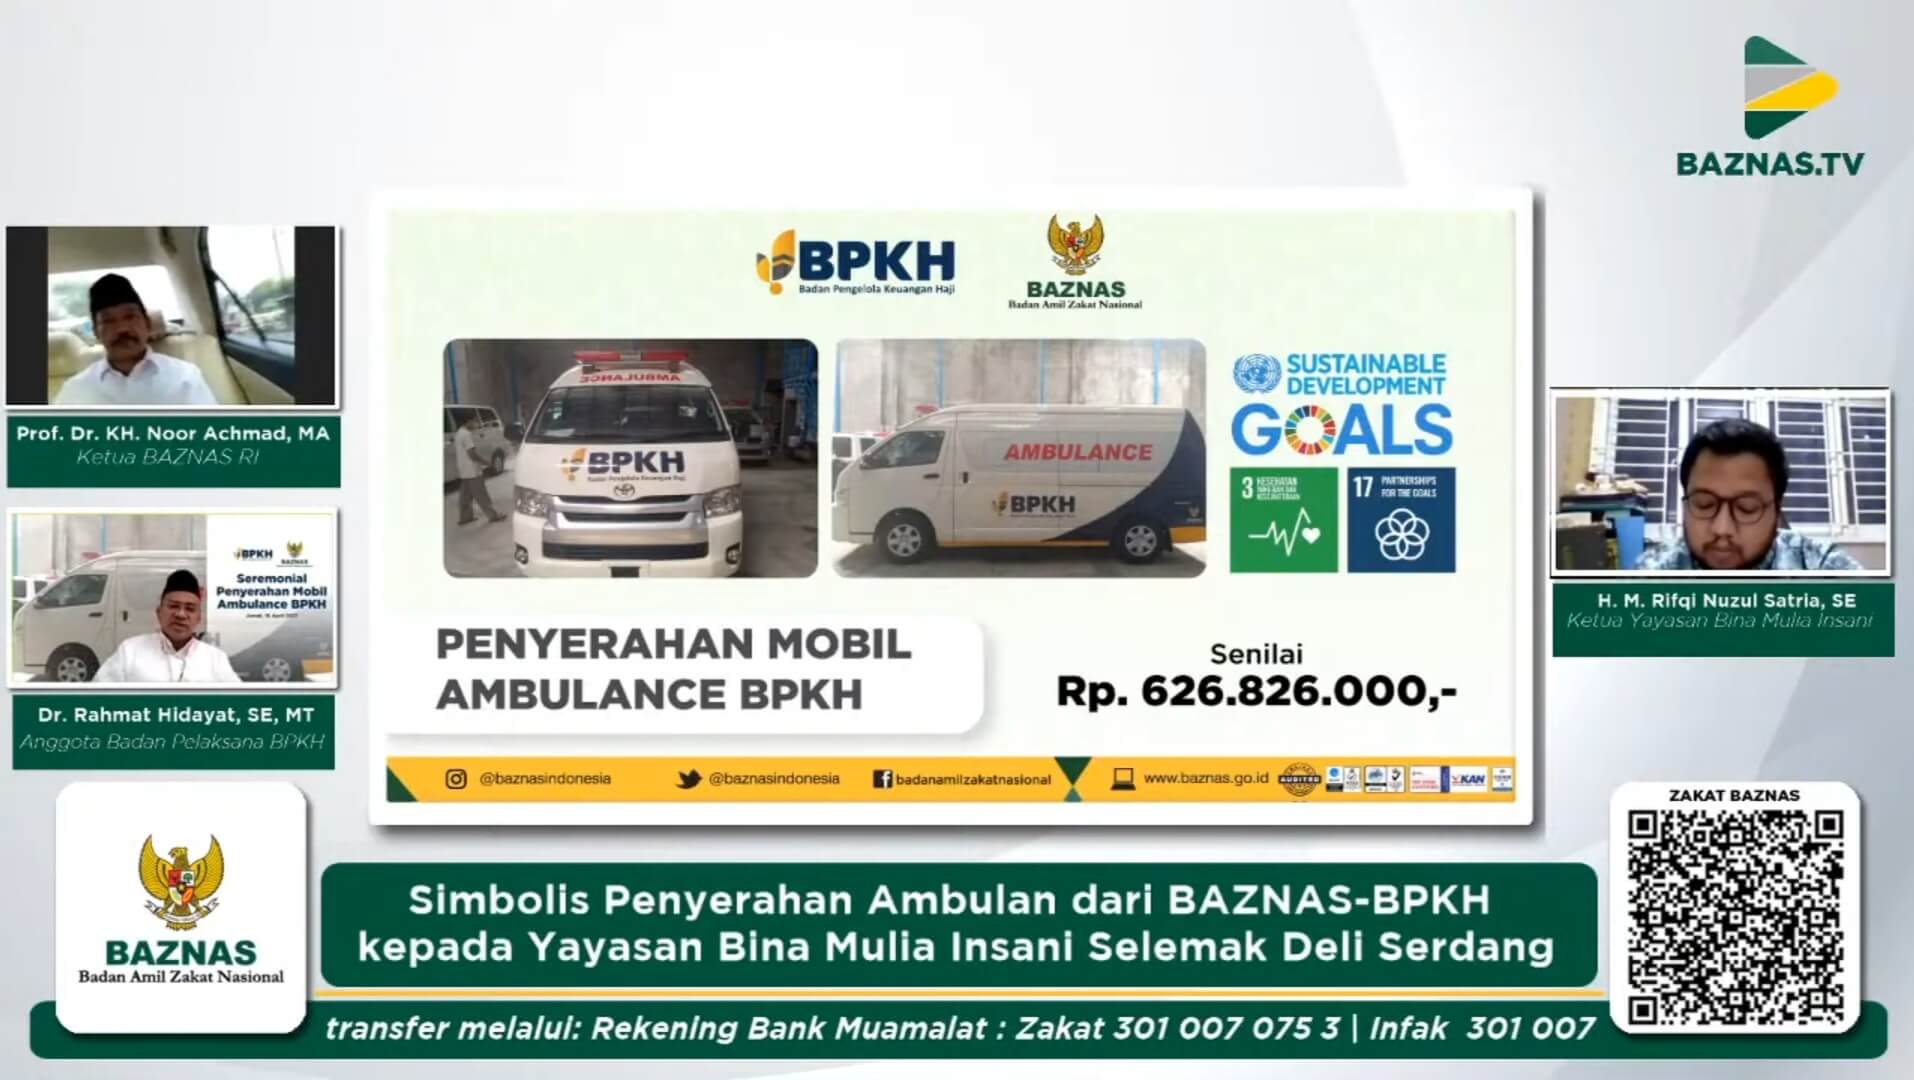 BAZNAS dan BPKH Bantu Ambulans untuk Yayasan di Deli Serdang